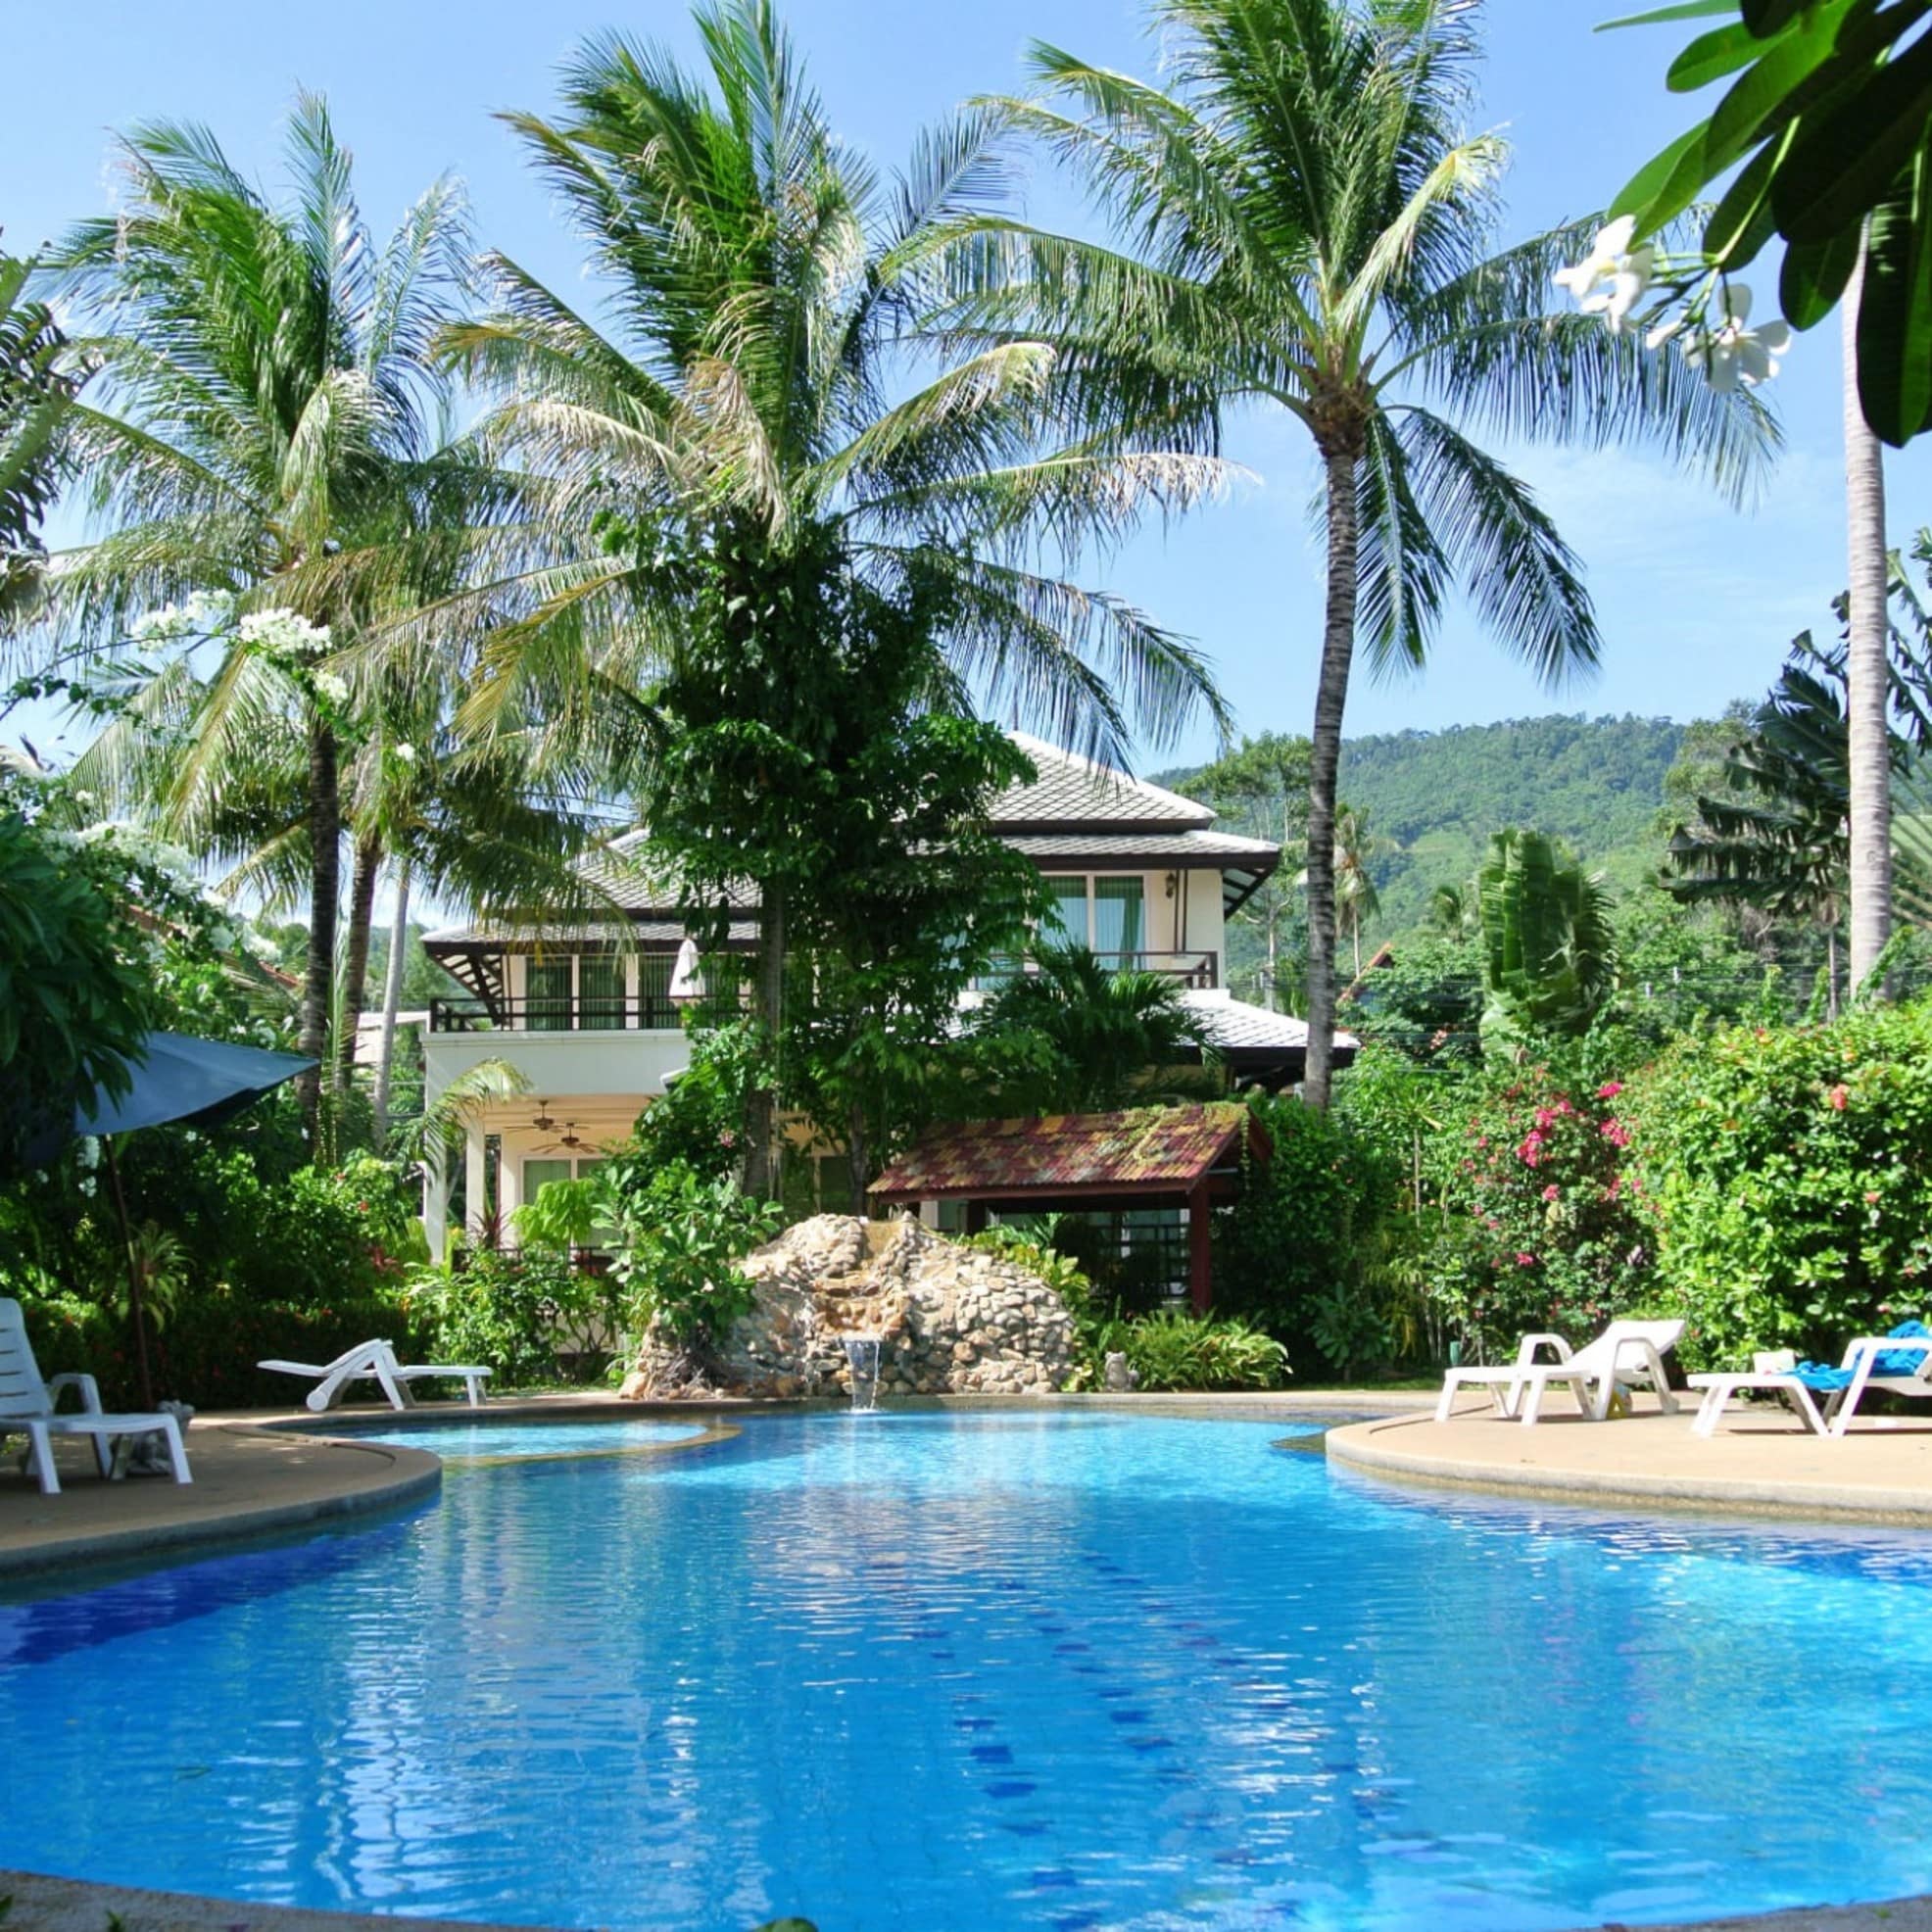 Bungalow auf Koh Samui mit Pool und Sonnenliegen umgeben von einem tropischen Garten